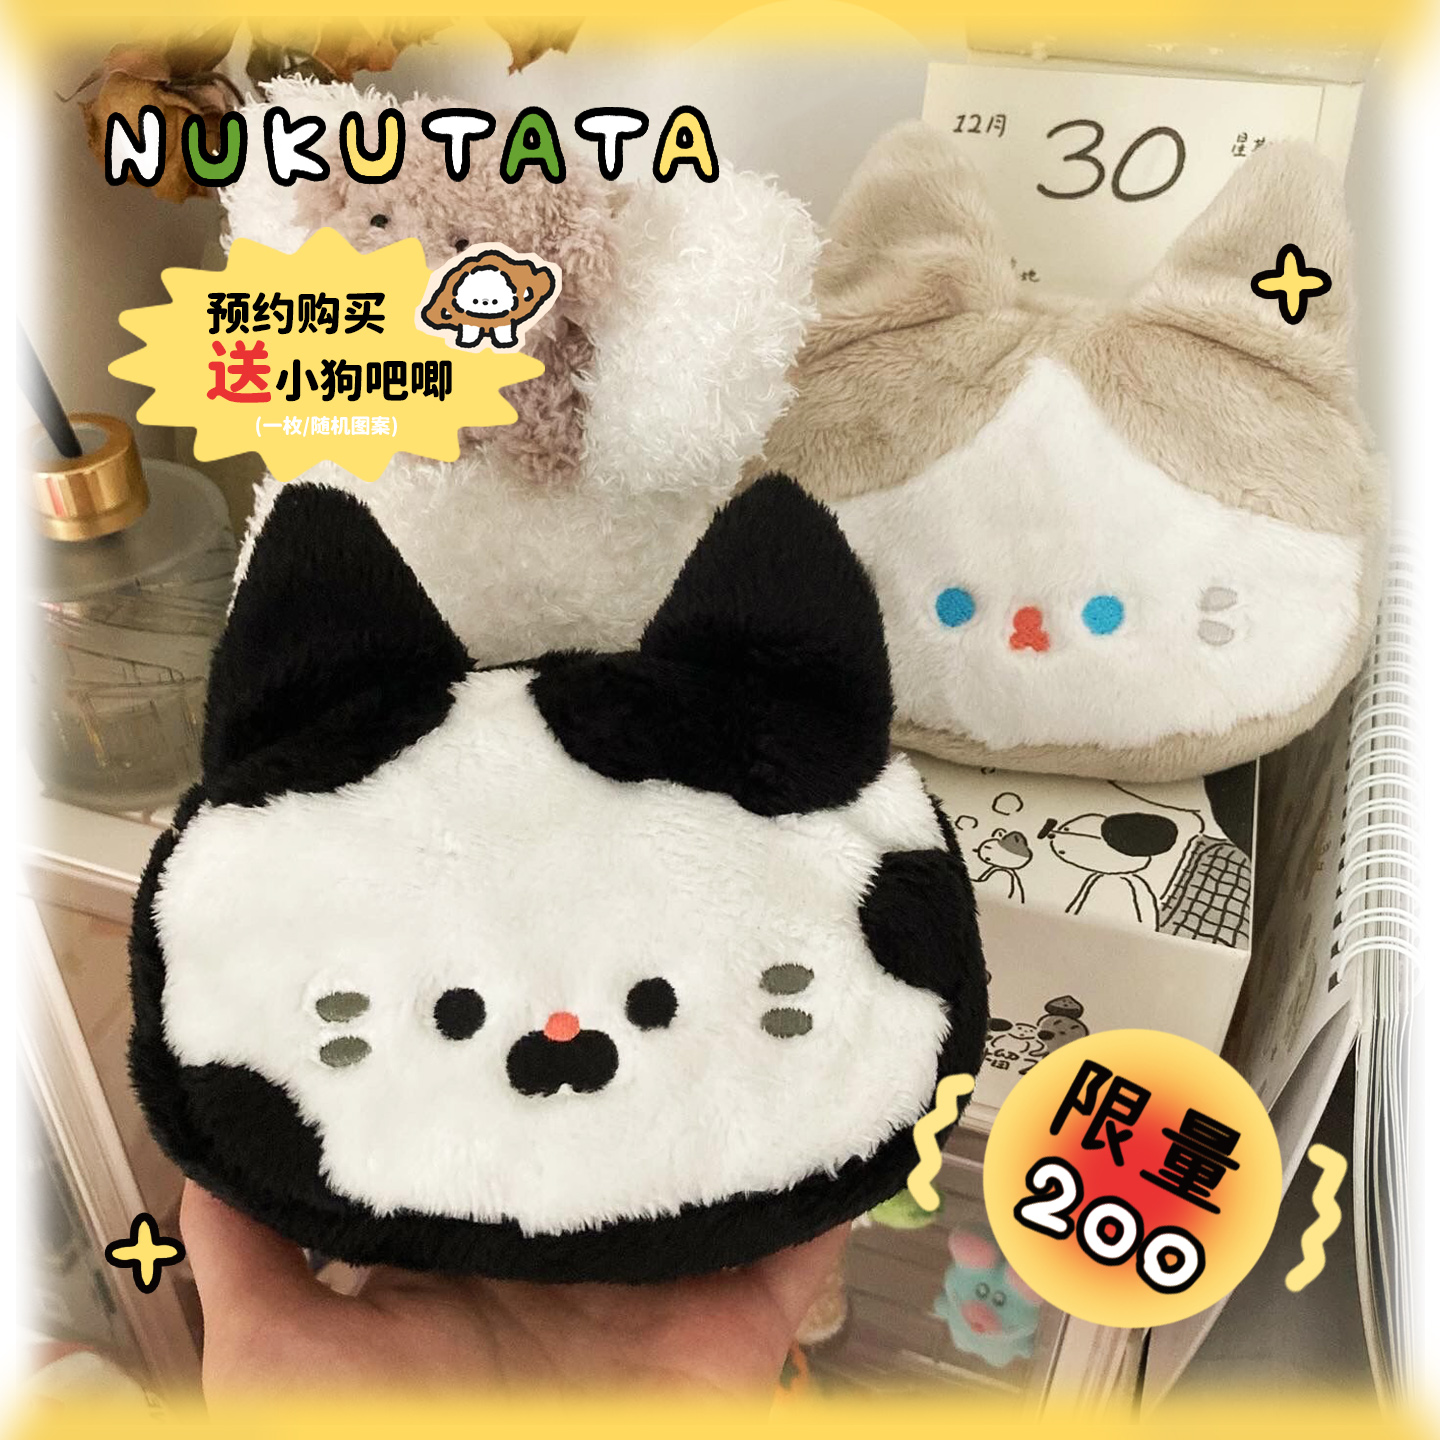 Nukutata原创 “包子包SP”黑白杏色毛绒挂件礼物猫咪零钱包收纳